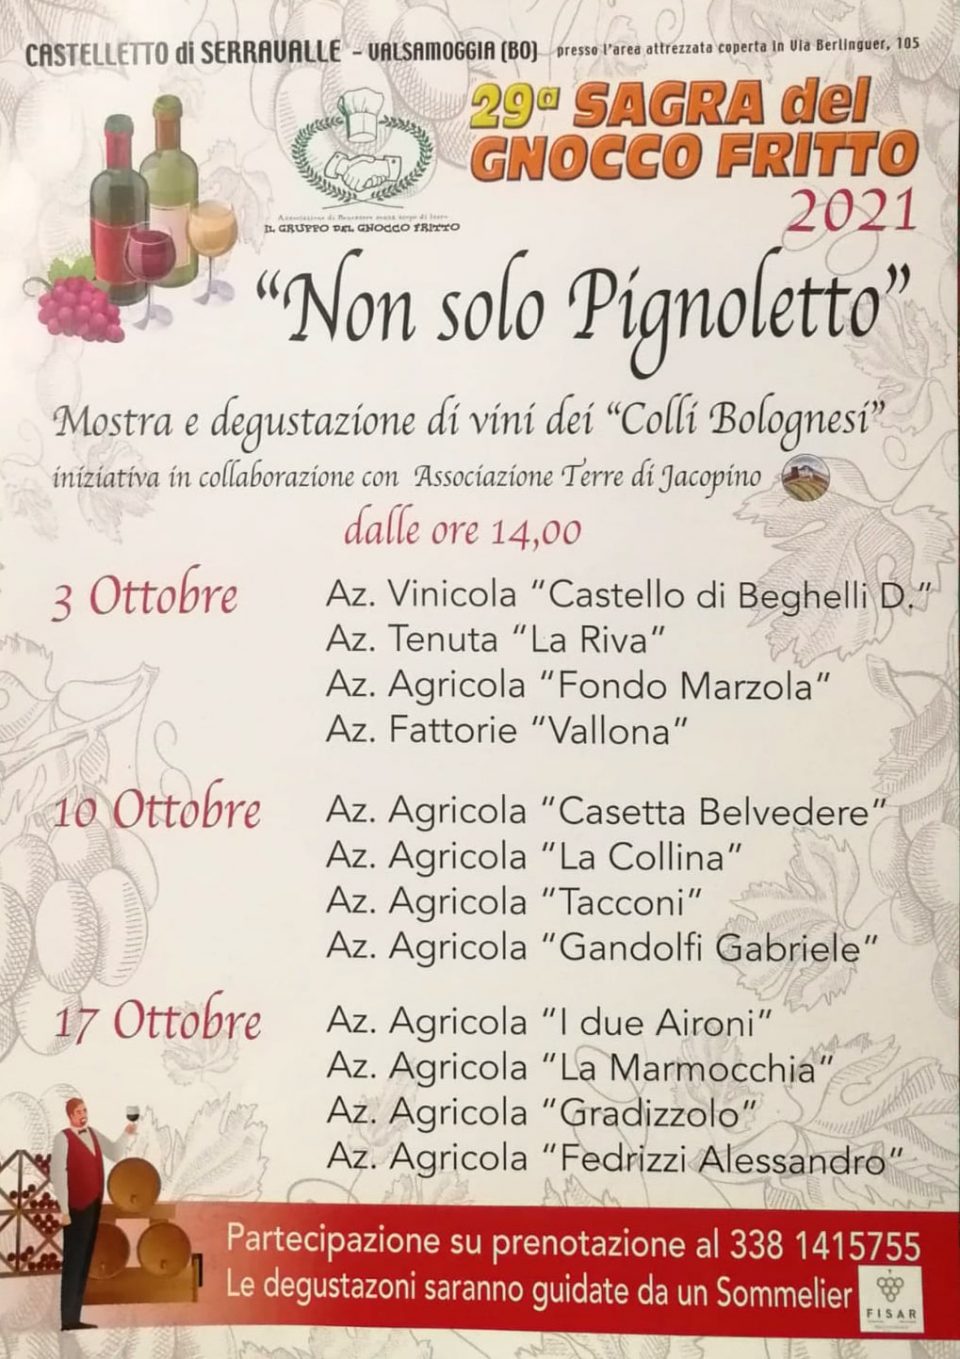 “Non solo Pignoletto” a Castelletto di Serravalle